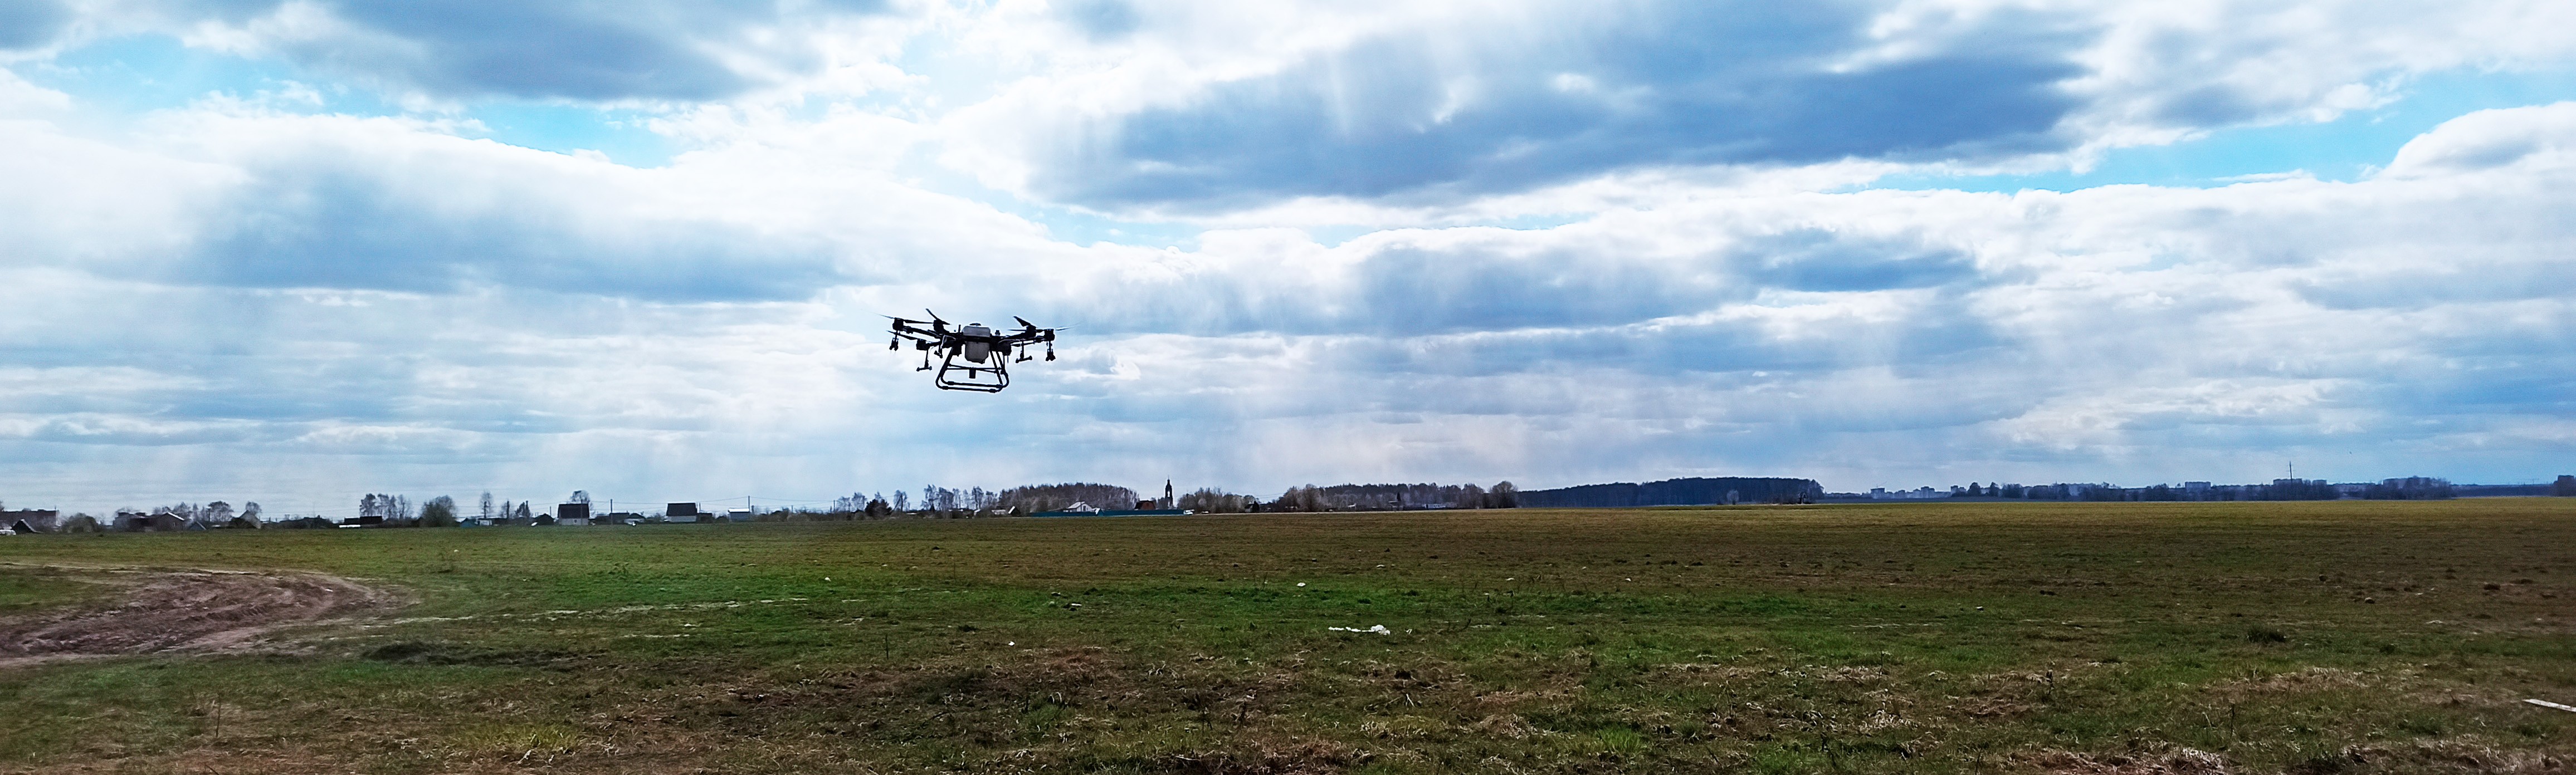 ООО «Агромир» повысил эффективность с помощью дронов DJI почти в 3 раза - Сельское хозяйство